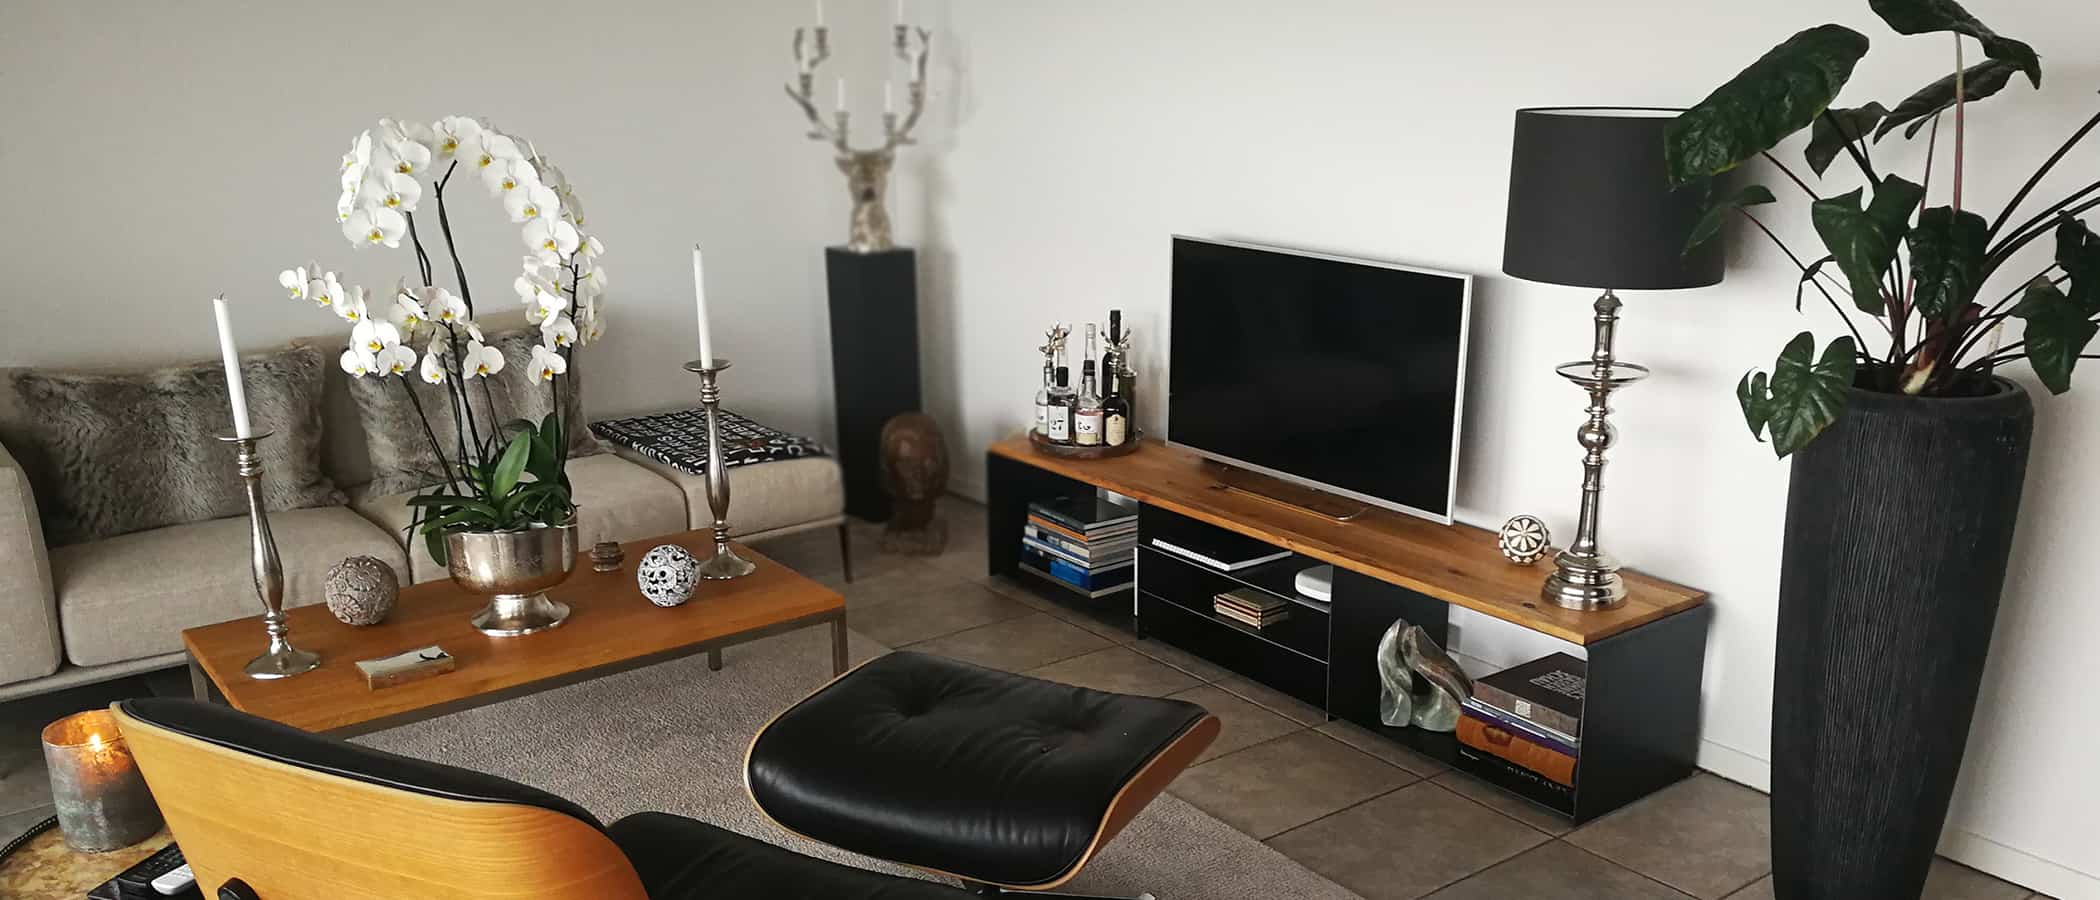 tv-moebel-stahlzart-tv-lowboard-lounge-chair-couchtisch-holz-schwarz-eiche-massiv-modern-metall-design-massivholz-grau-industrial-designer-wohnzimmer-wildeiche-fernseher-stahl-ideen